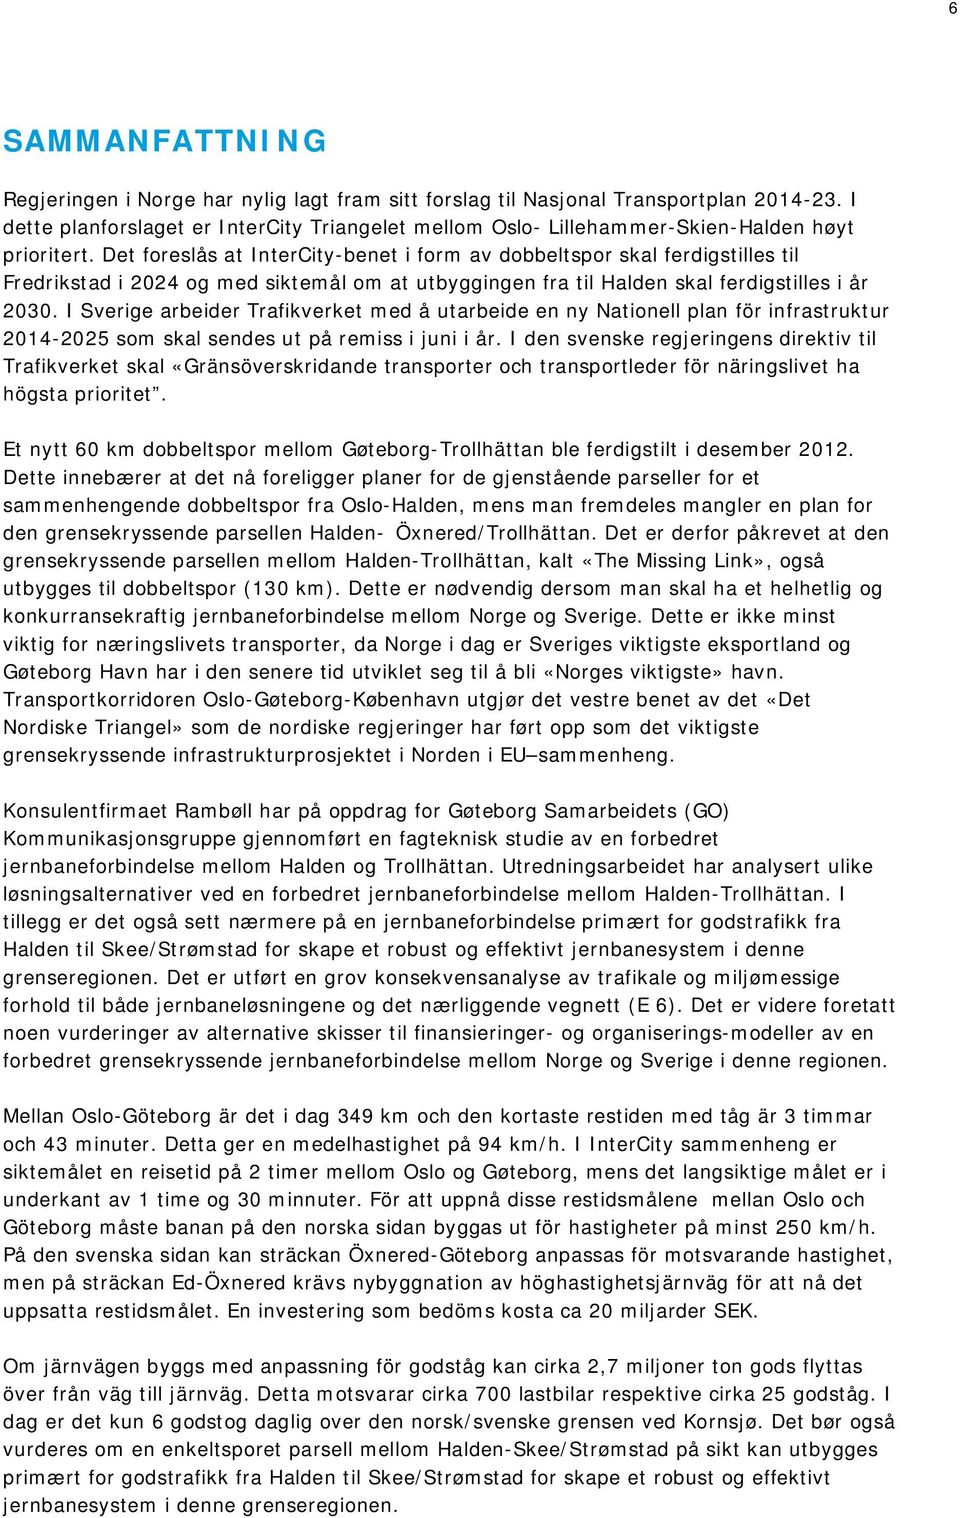 Det foreslås at InterCity-benet i form av dobbeltspor skal ferdigstilles til Fredrikstad i 2024 og med siktemål om at utbyggingen fra til Halden skal ferdigstilles i år 2030.